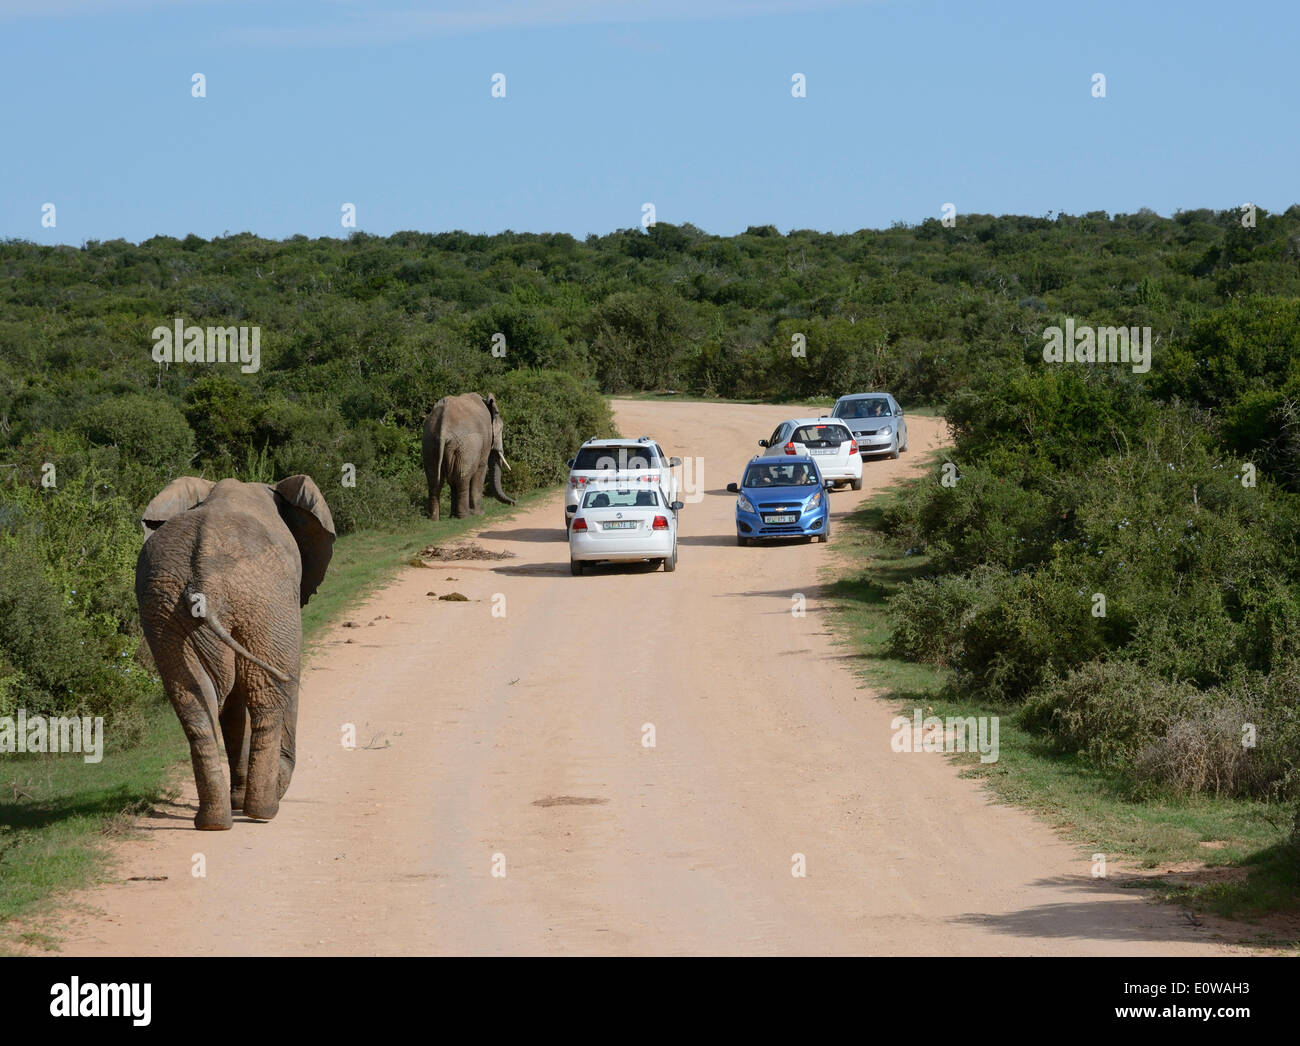 Bush de l'Afrique de l'éléphant (Loxodonta africana) et des voitures sur une route de terre, l'Addo Elephant National Park, Eastern Cape, Afrique du Sud Banque D'Images